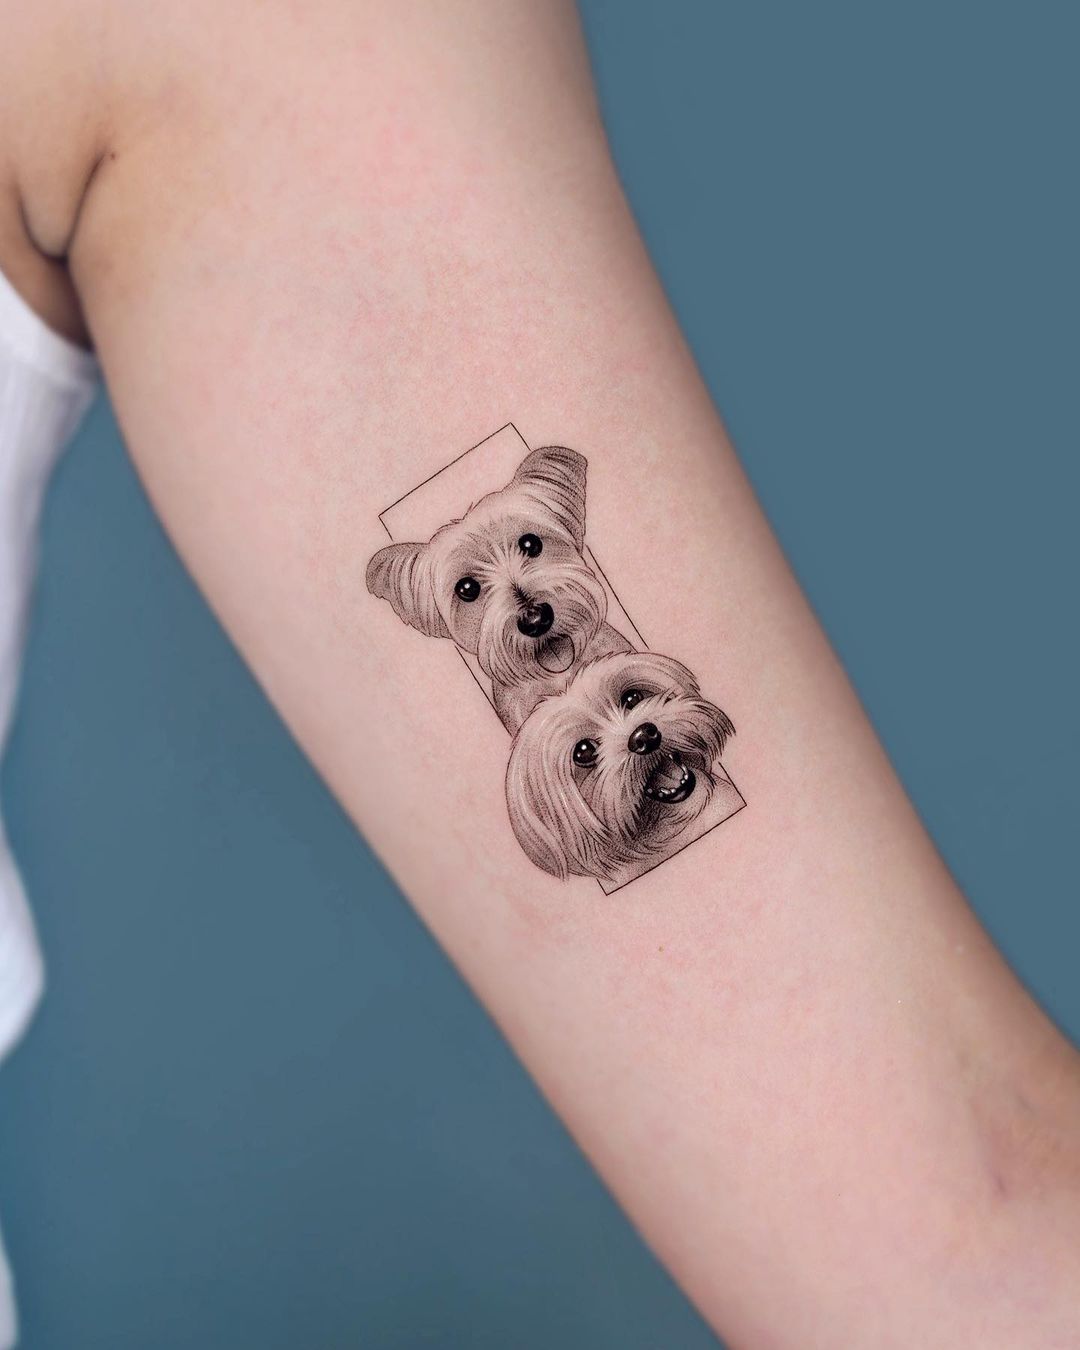 Cute minimalistic dog tattoo by zeal tattoo